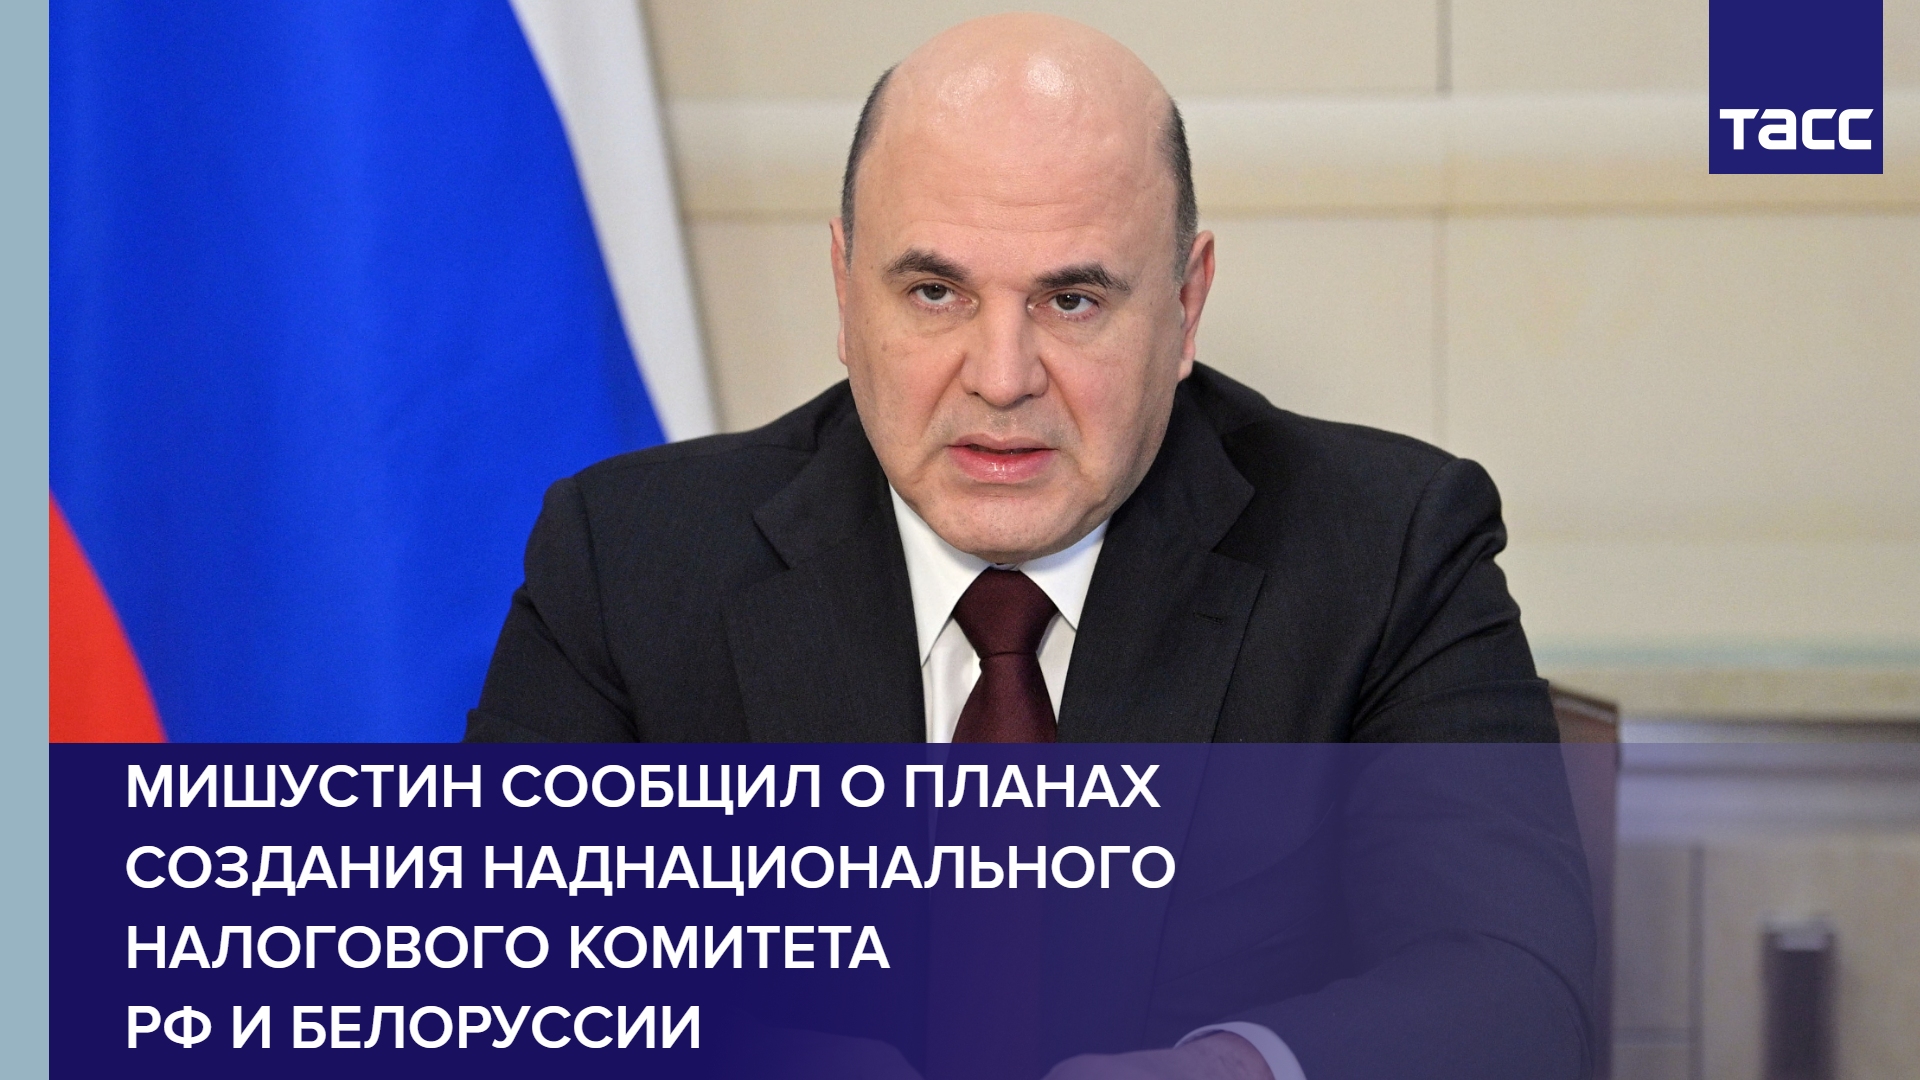 Мишустин сообщил о планах создания наднационального налогового комитета РФ и Белоруссии